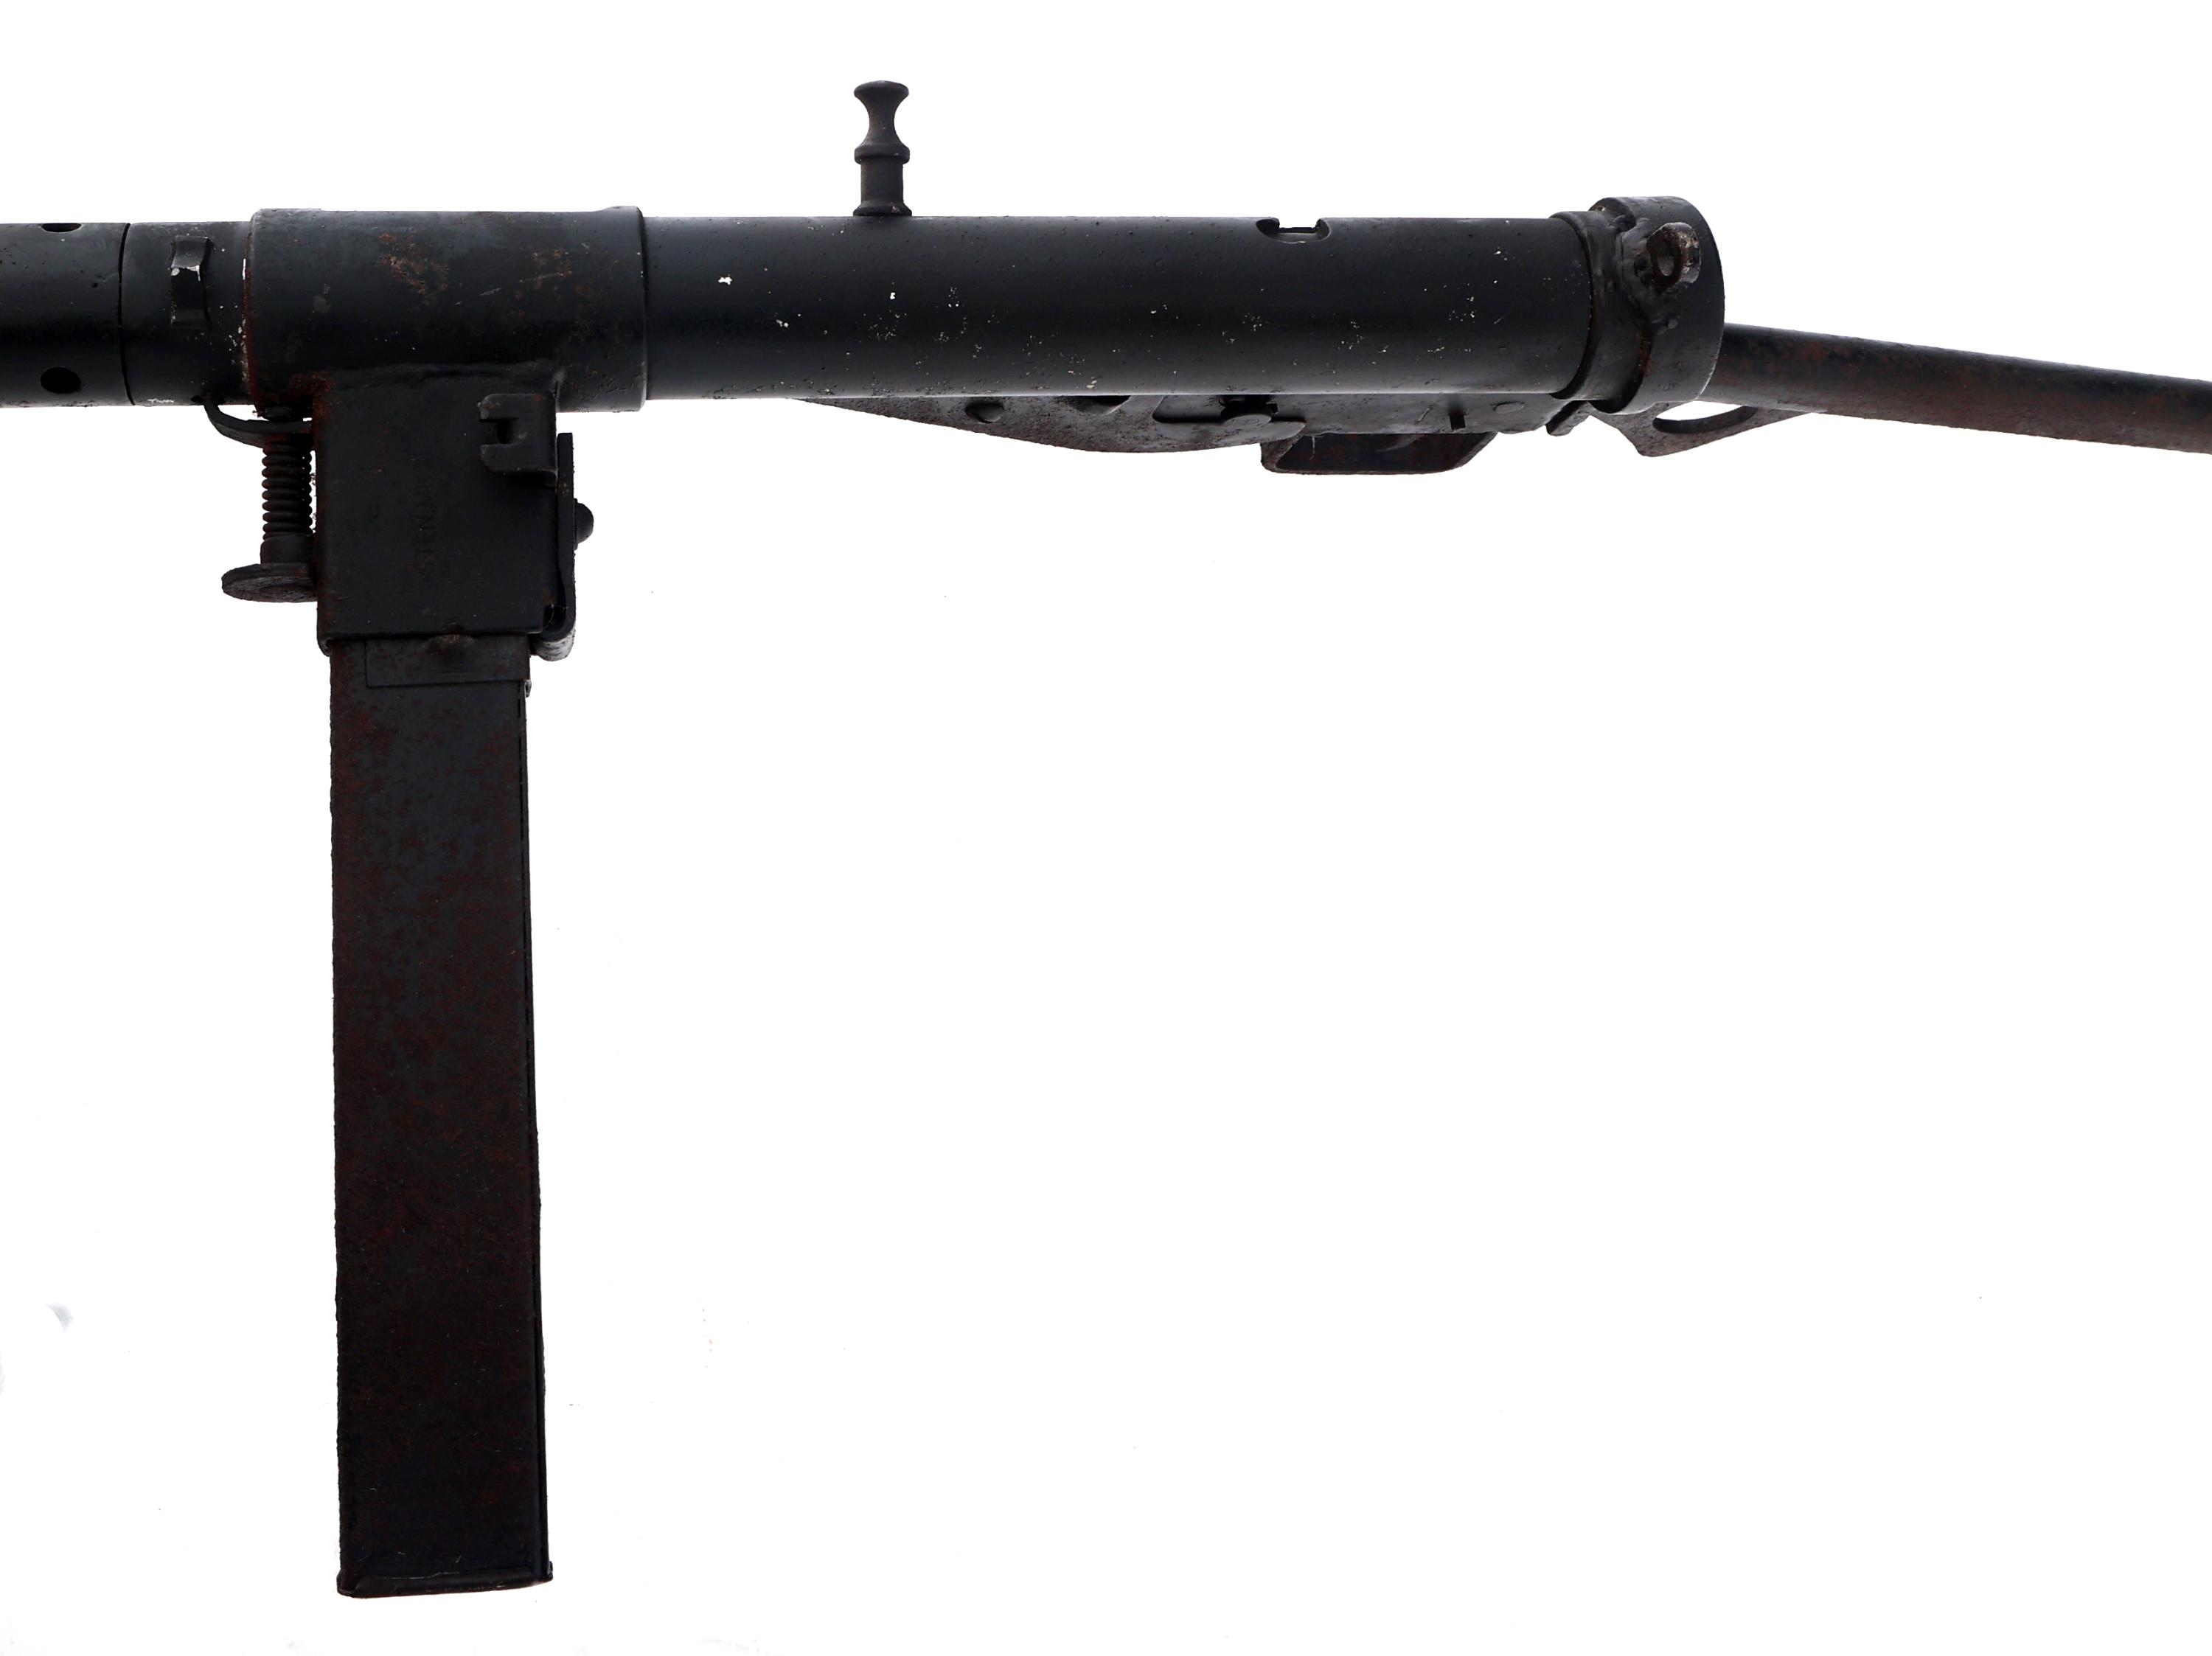 BRITISH STEN Mk II INERT DISPLAY MACHINE GUN